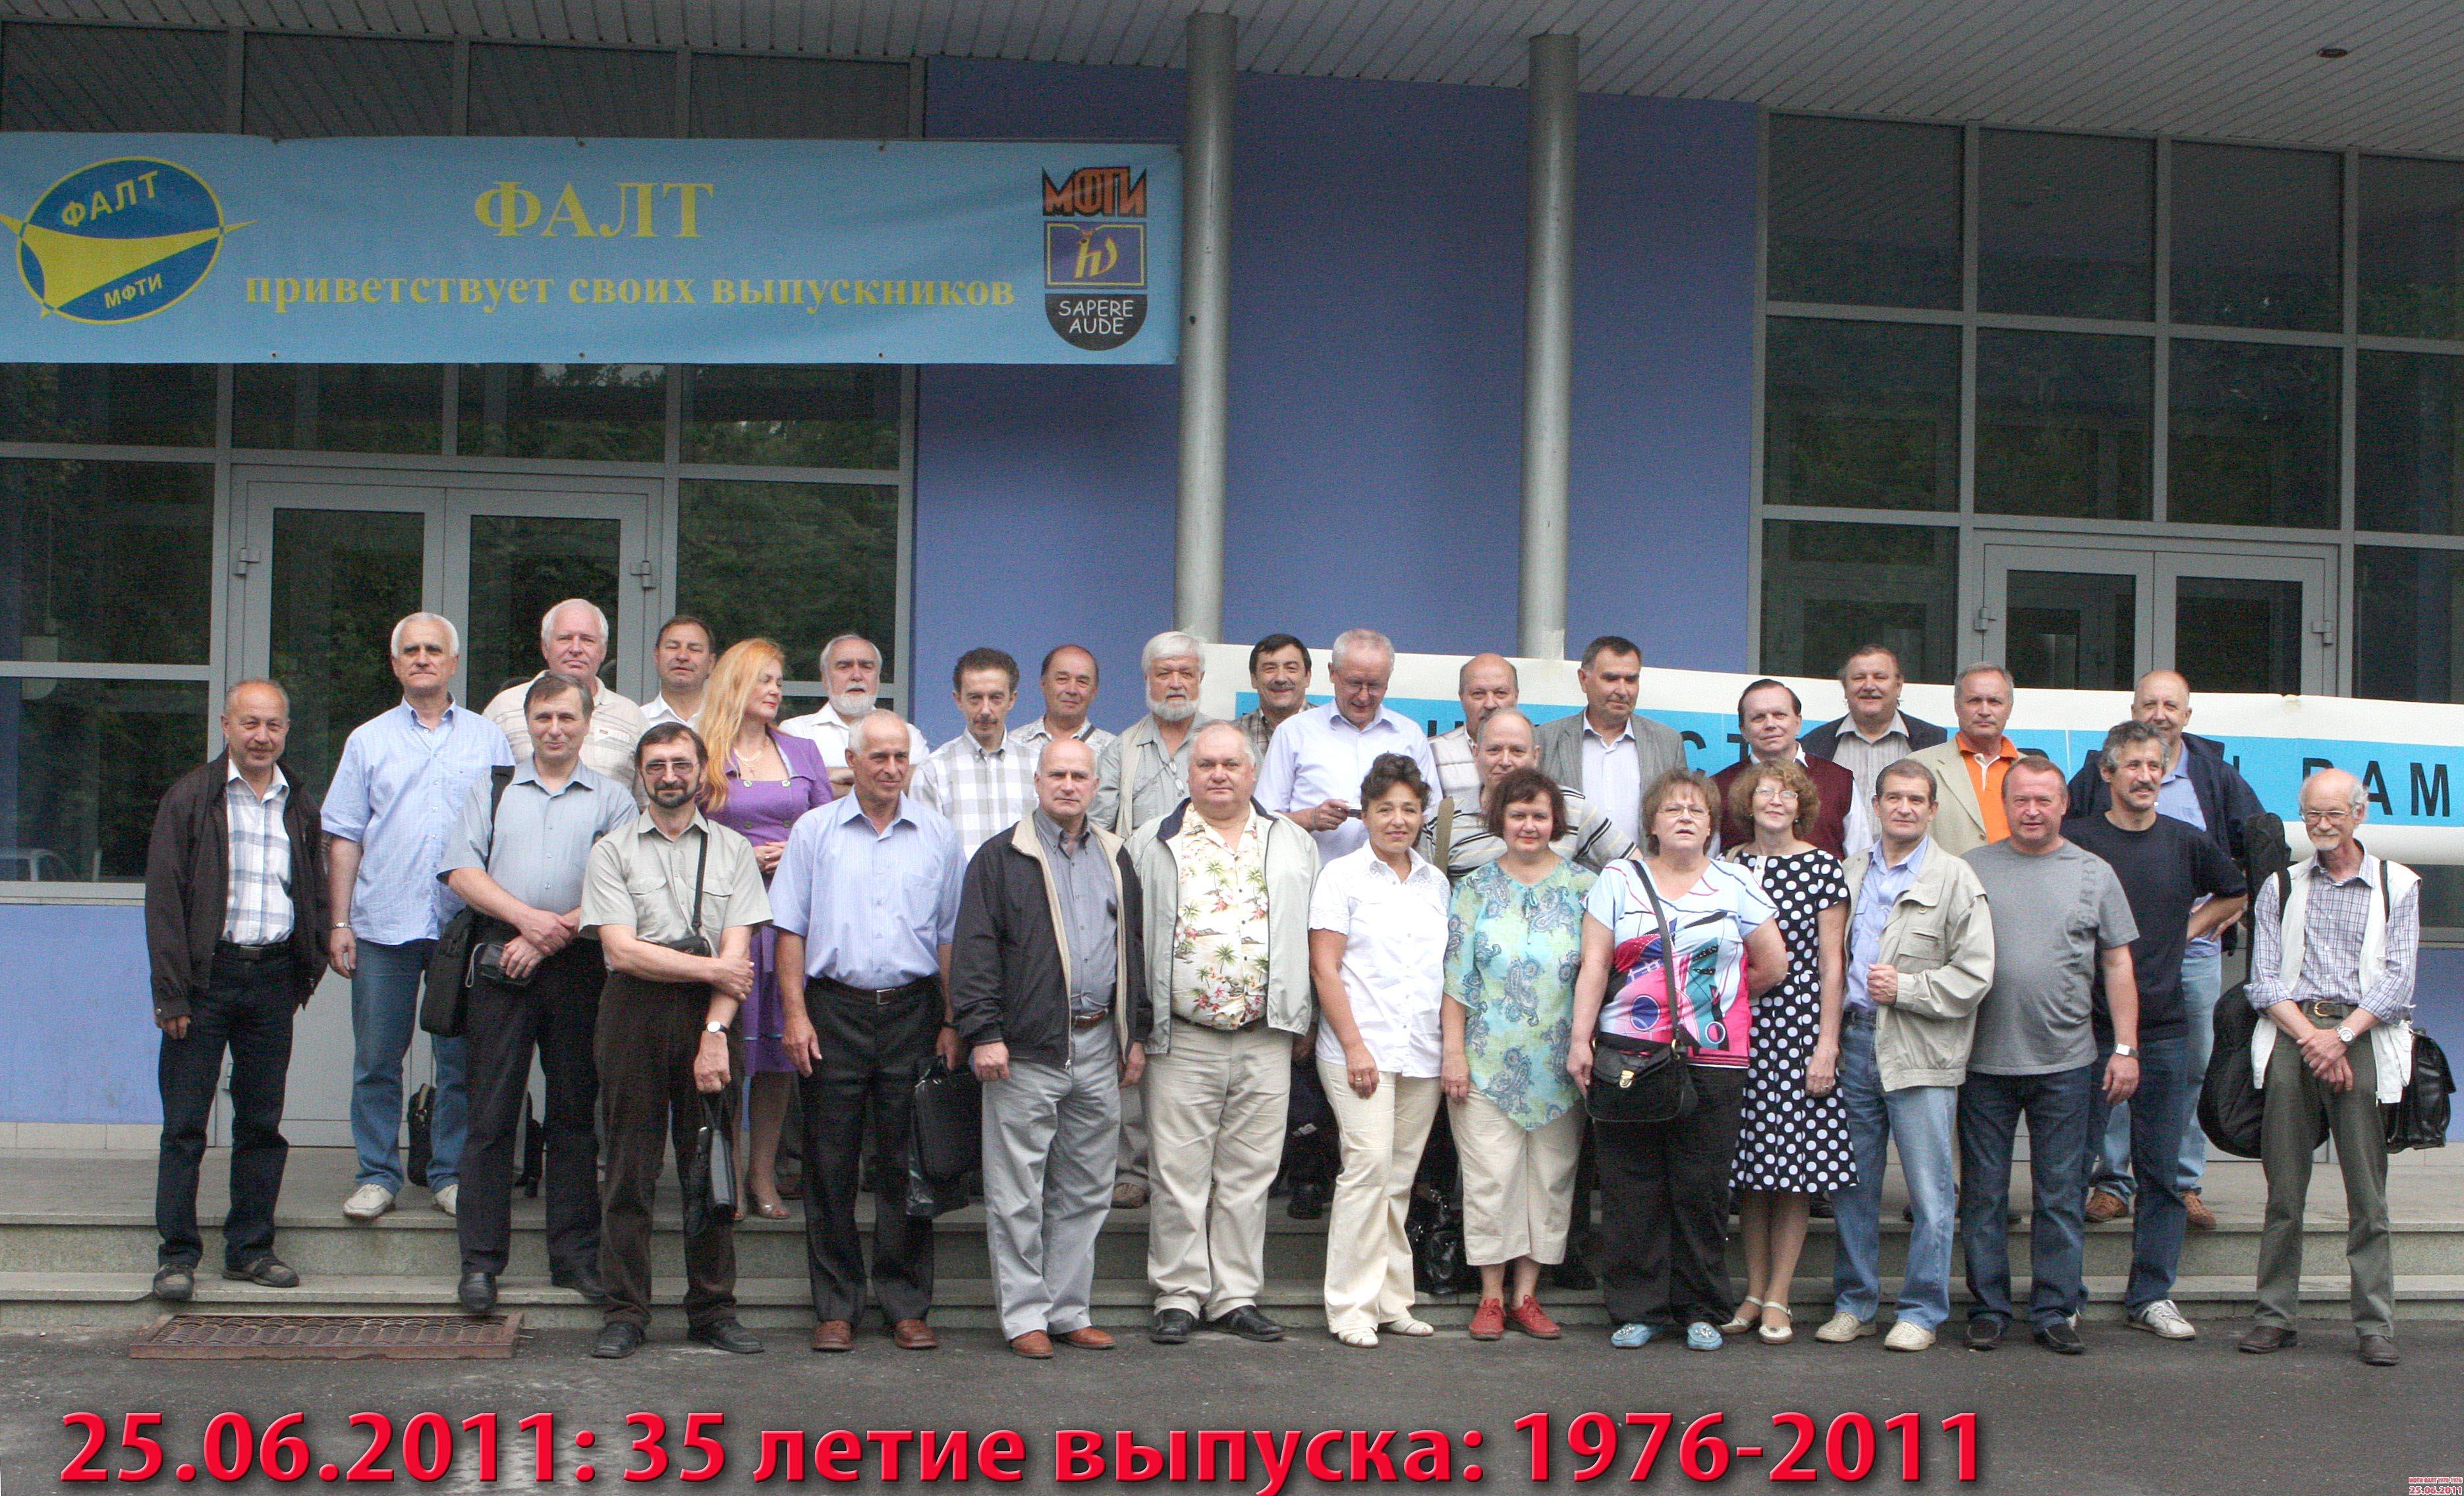 Общее фото перед учебным корпусом ФАЛТ со встречи выпускников 25 июня 2011 года. 